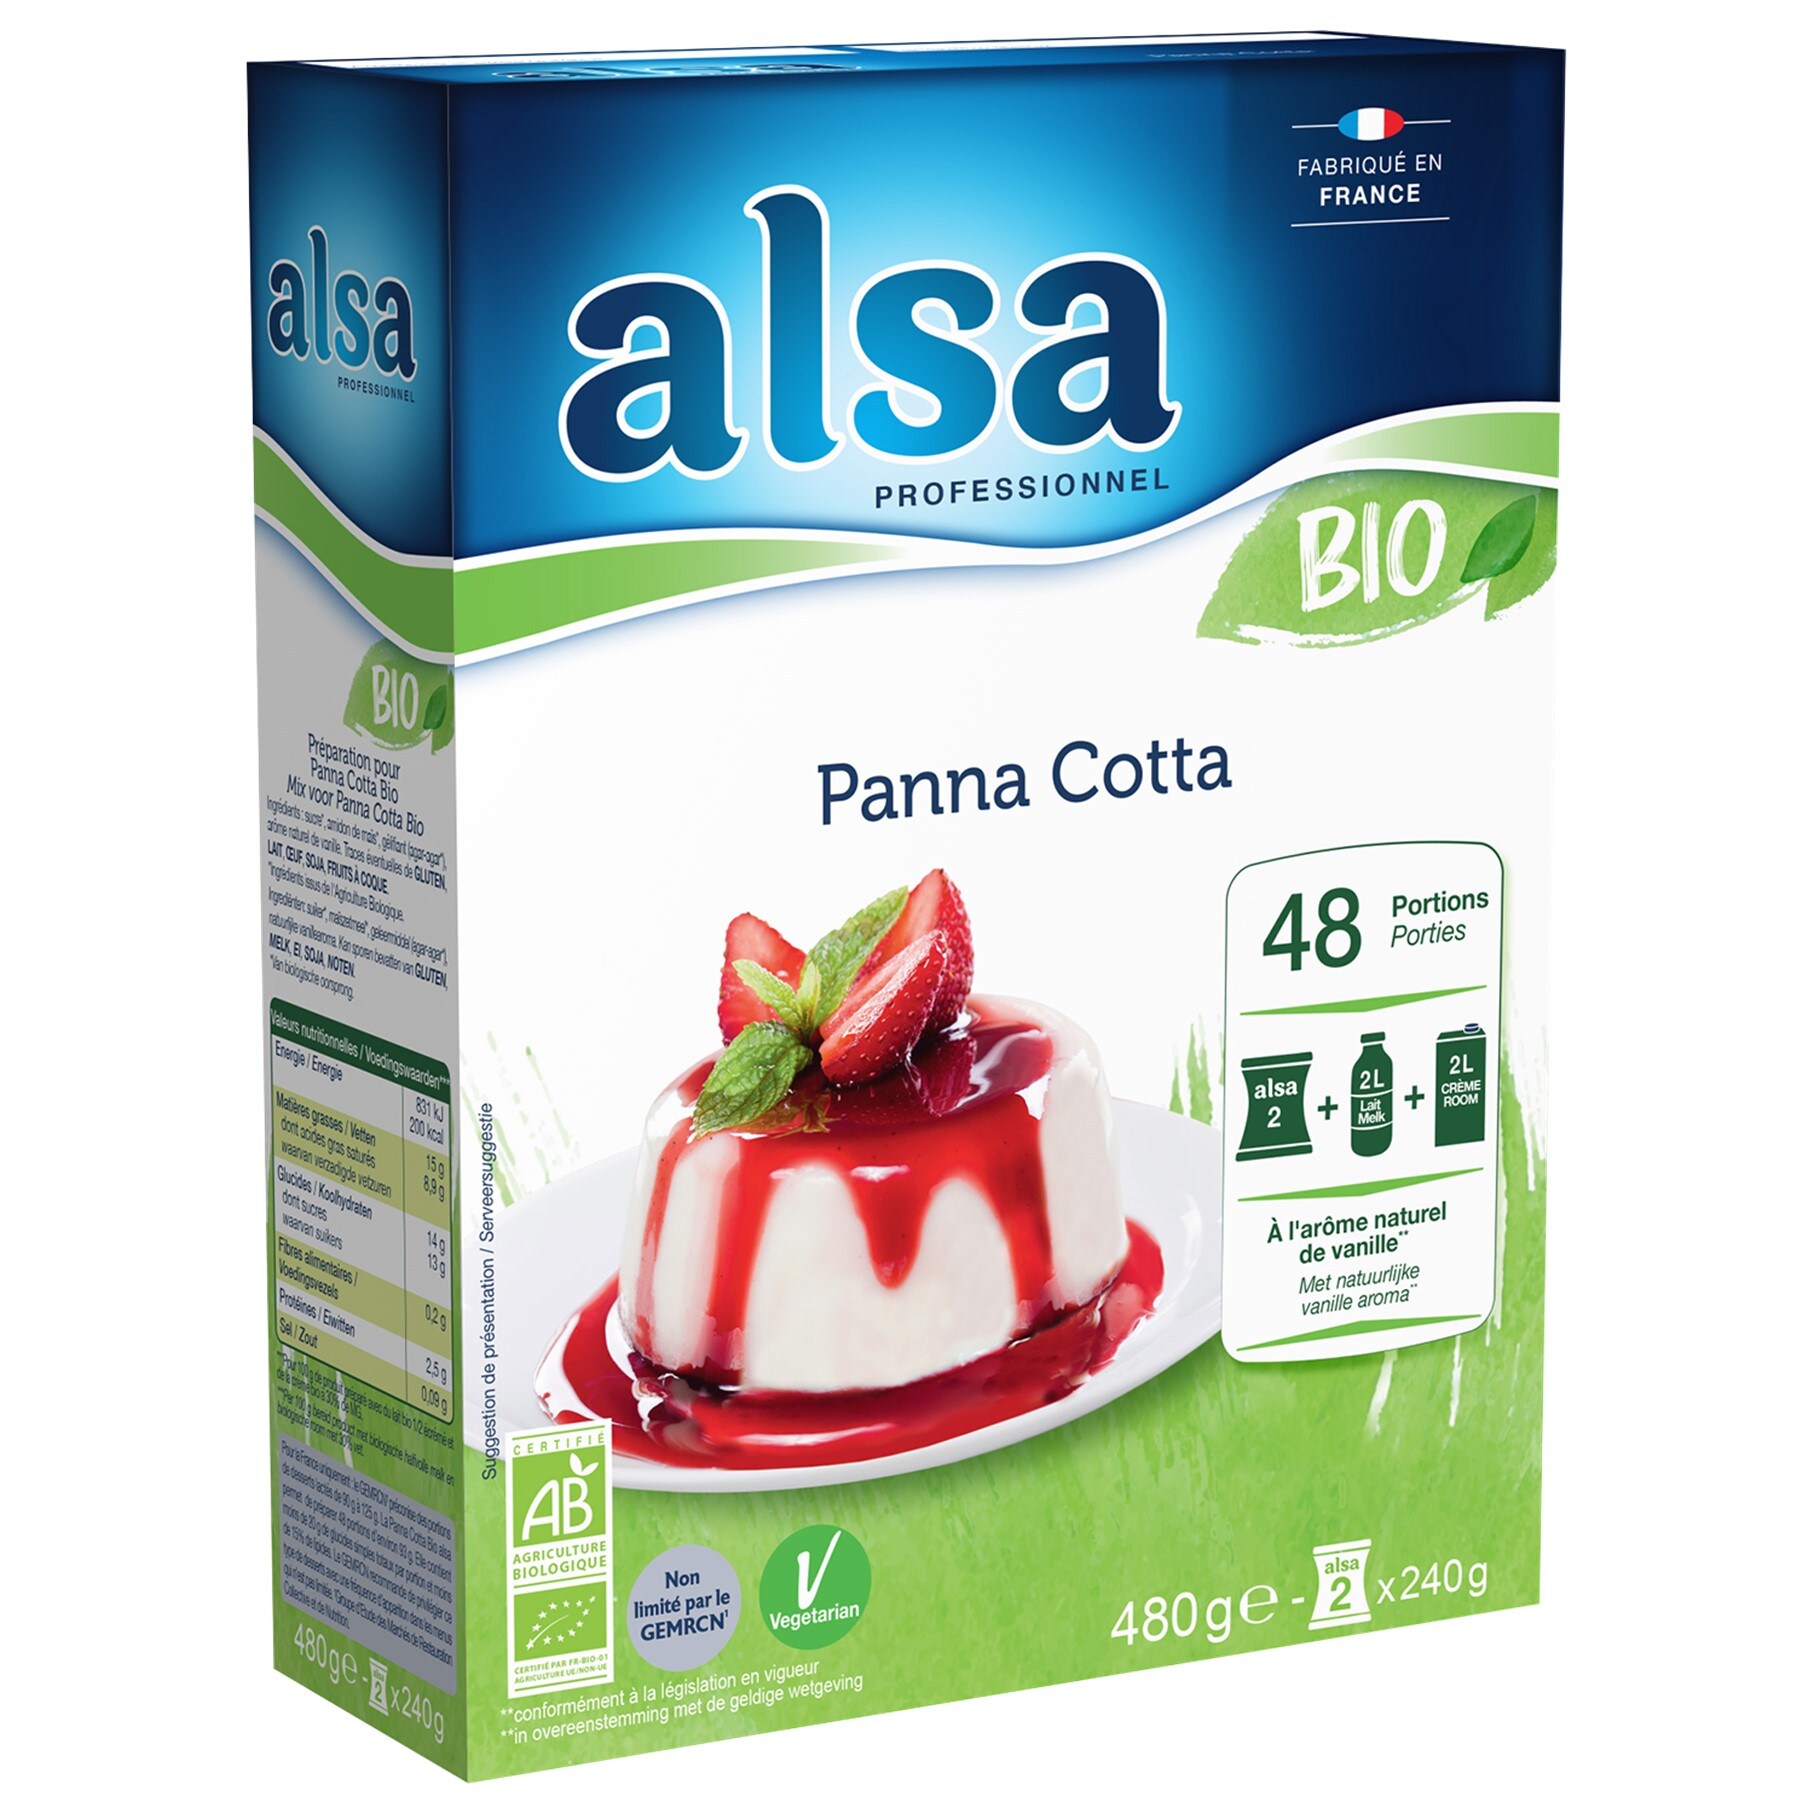 Alsa Panna Cotta Bio 480g 48 portions - La Panna Cotta Bio alsa me permet de réaliser facilement de savoureux desserts bio